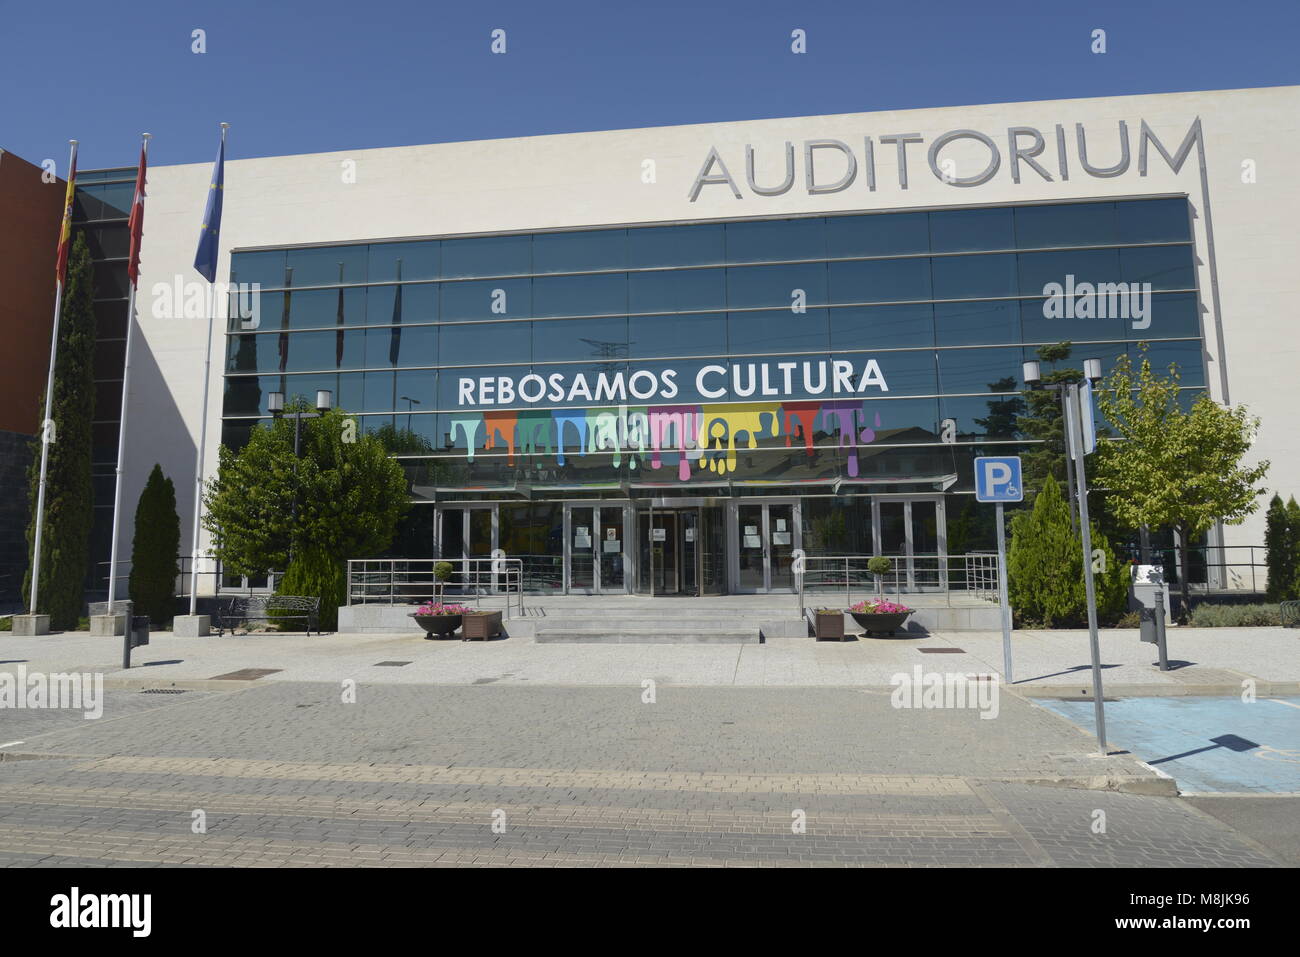 Immagine dell Auditorium pubblico edificio nella città di Arroyomolinos, Madrid, Spagna. Il principale sentece, 'Reposamos Cultura', 'abbiamo resto cultura" tradotto. Foto Stock